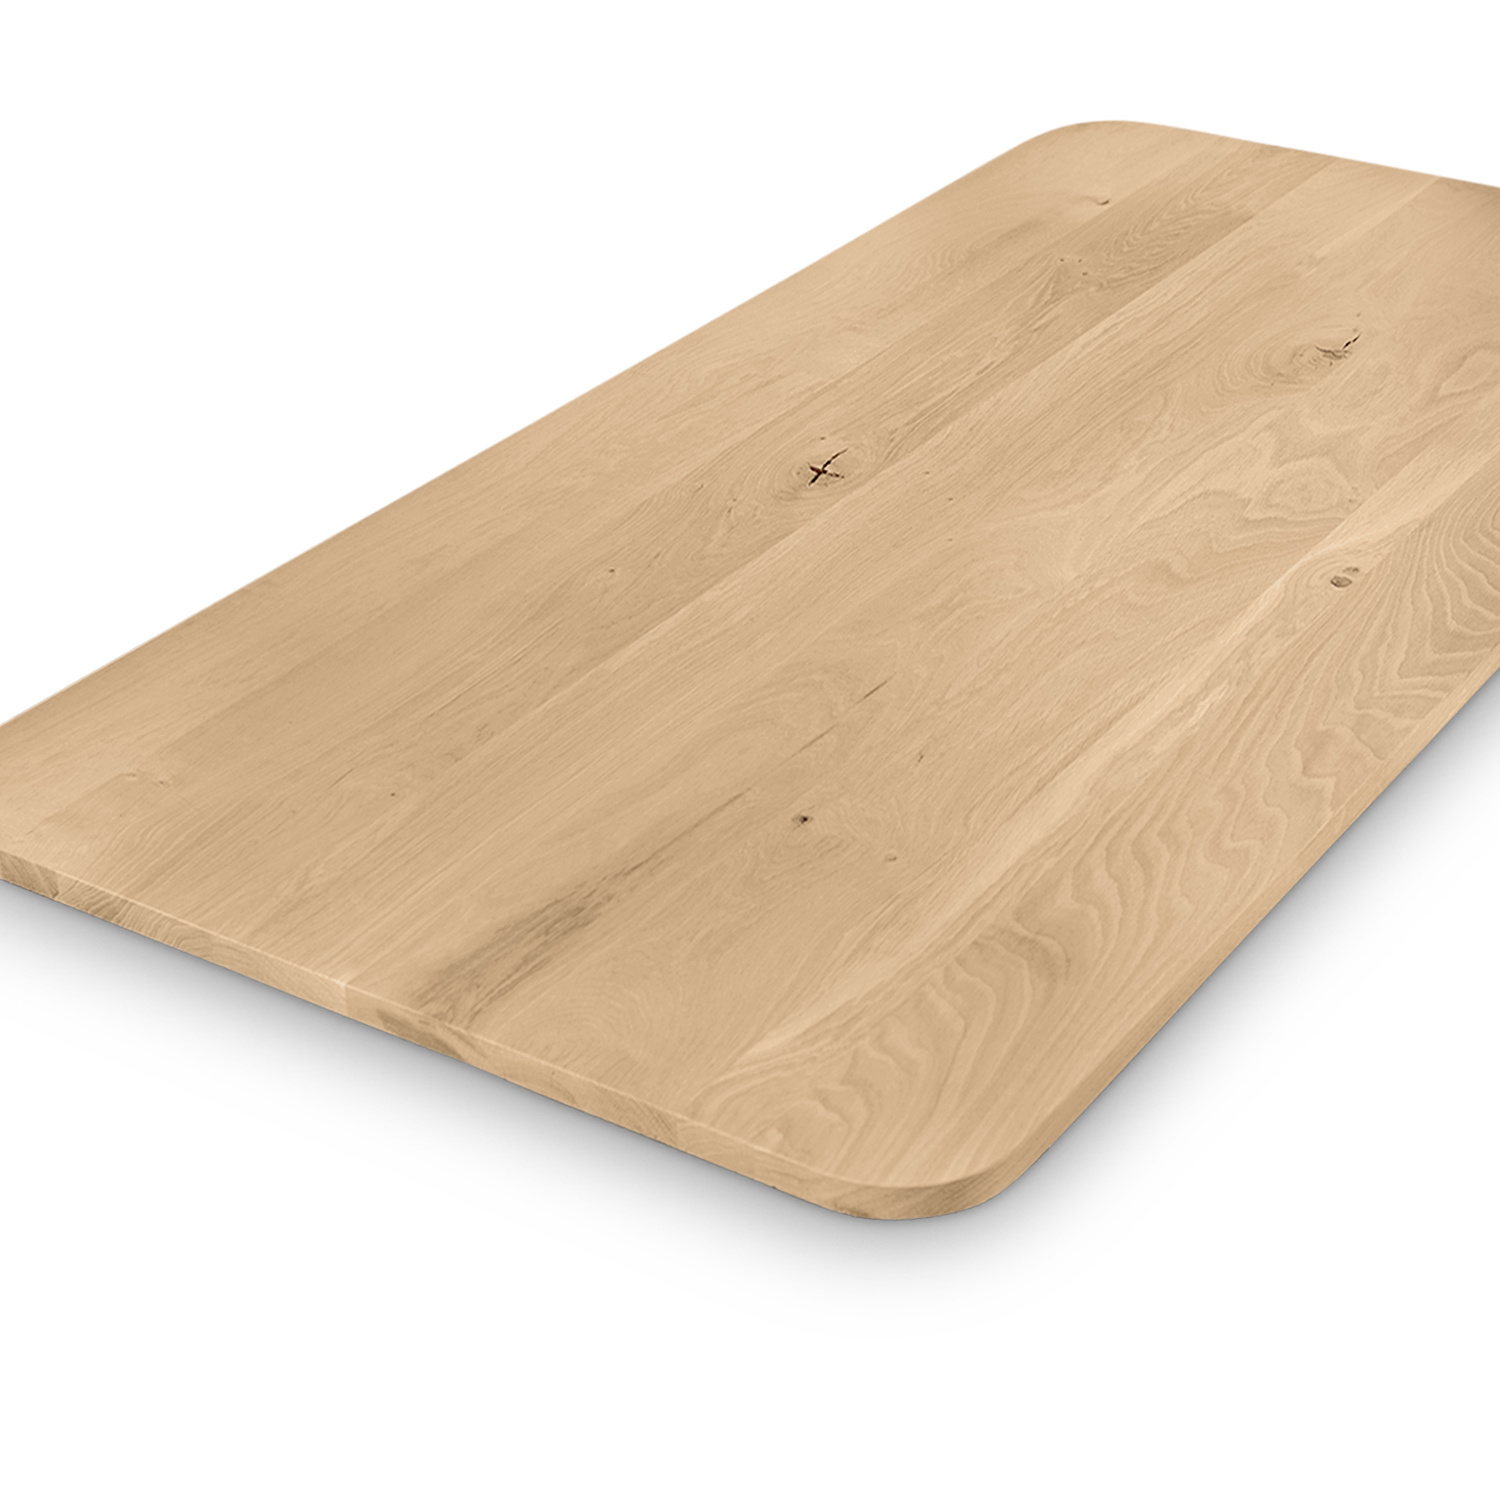  Tischplatte Eiche mit runden Ecken - nach Maß - 3 cm dick - Eichenholz rustikal - Eiche Tischplatte massiv - verleimt & künstlich getrocknet (HF 8-12%) - mit abgerundeten Kanten - 50-120x50-350 cm